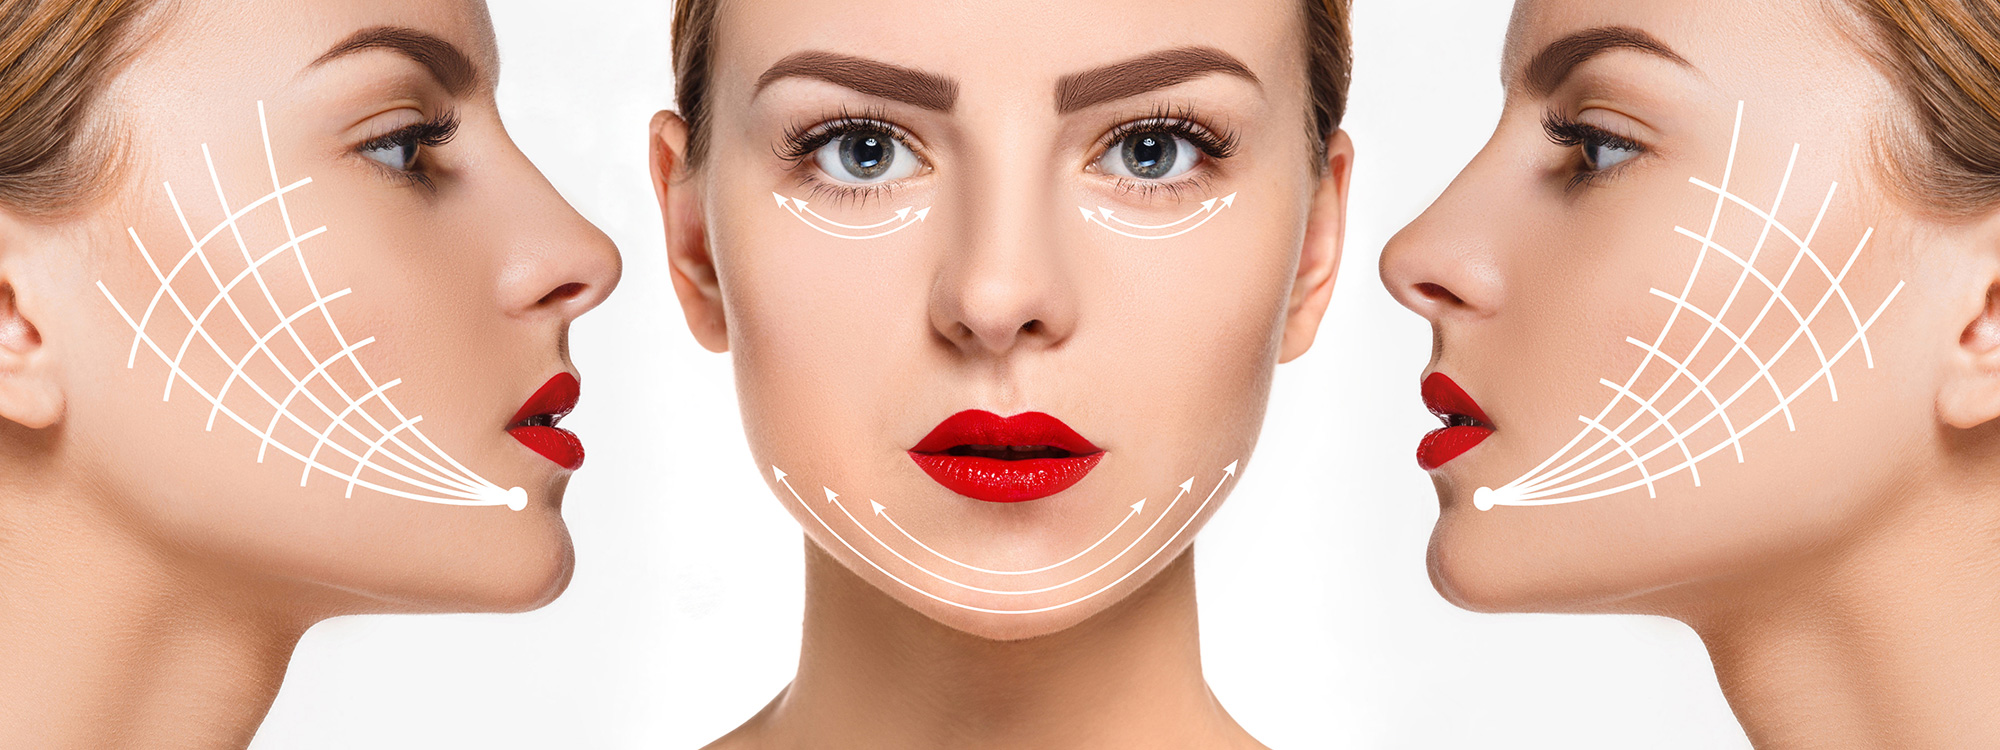 Căng chỉ collagen – Xóa đi mọi dấu hiệu lão hóa trên gương mặt